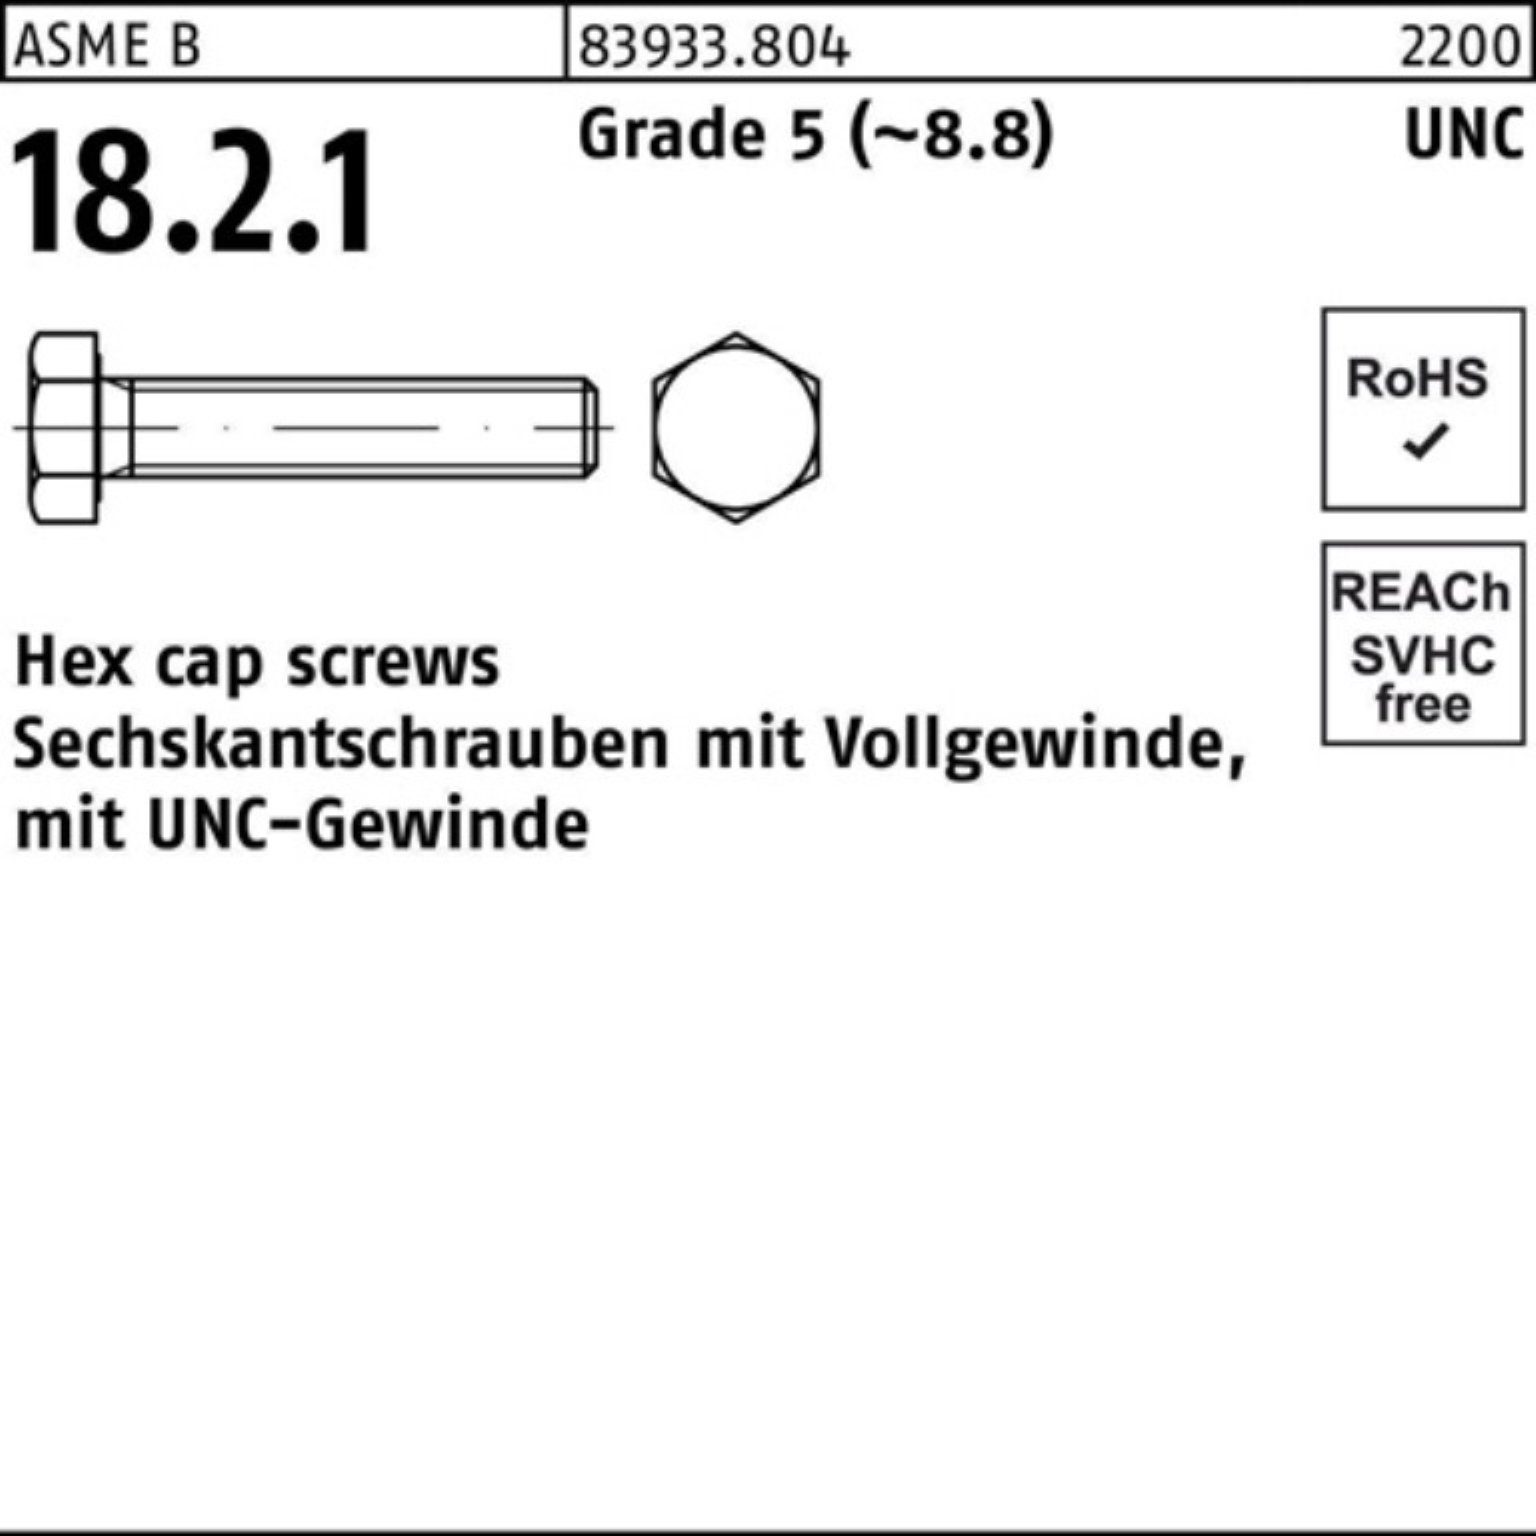 Reyher Sechskantschraube 100er Pack Sechskantschraube R 83933 UNC-Gewinde VG 5/16x 3/4 Grade 5